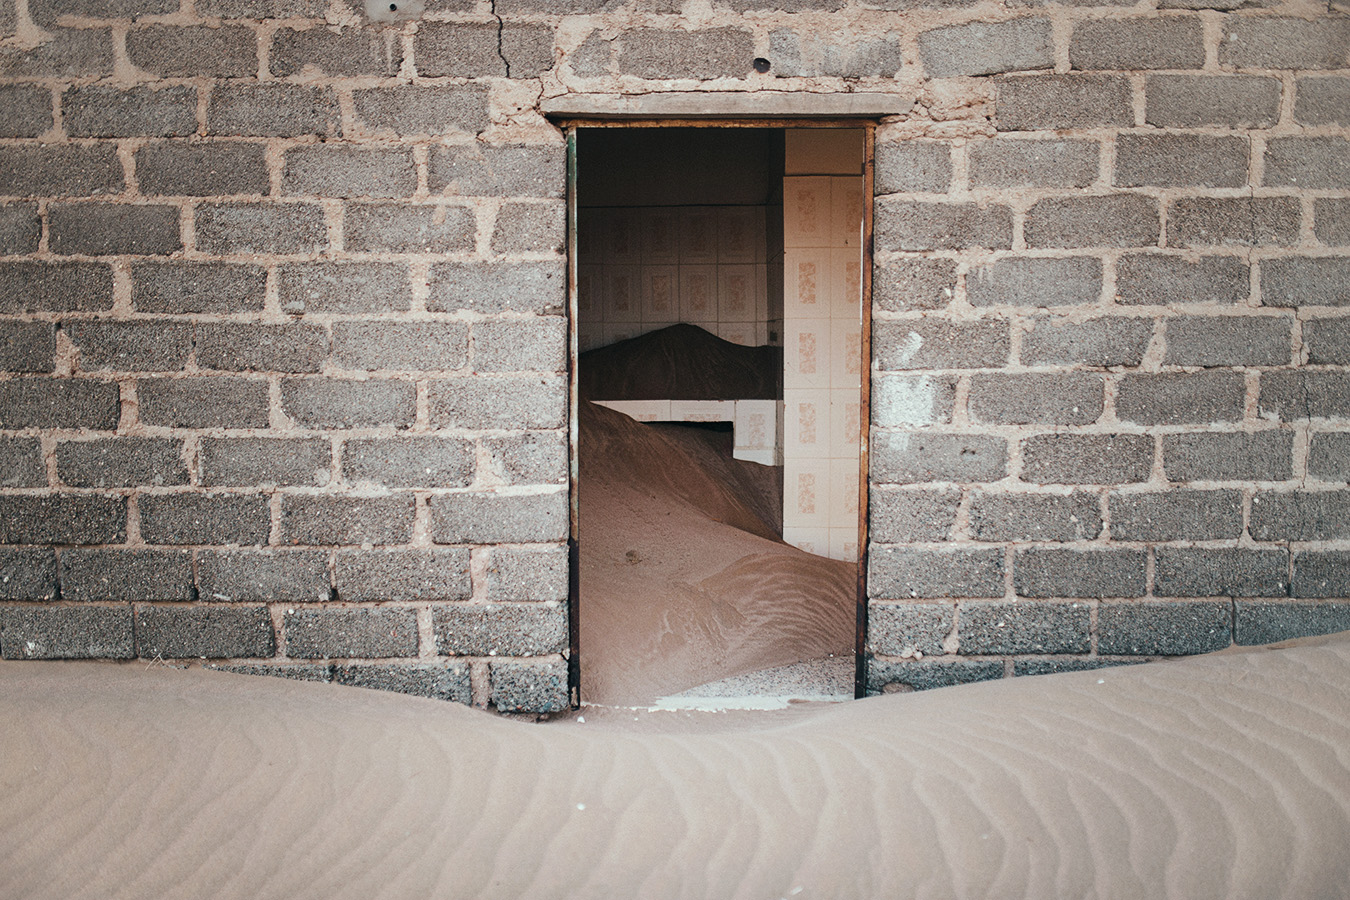 Sharqiya Sands, Oman